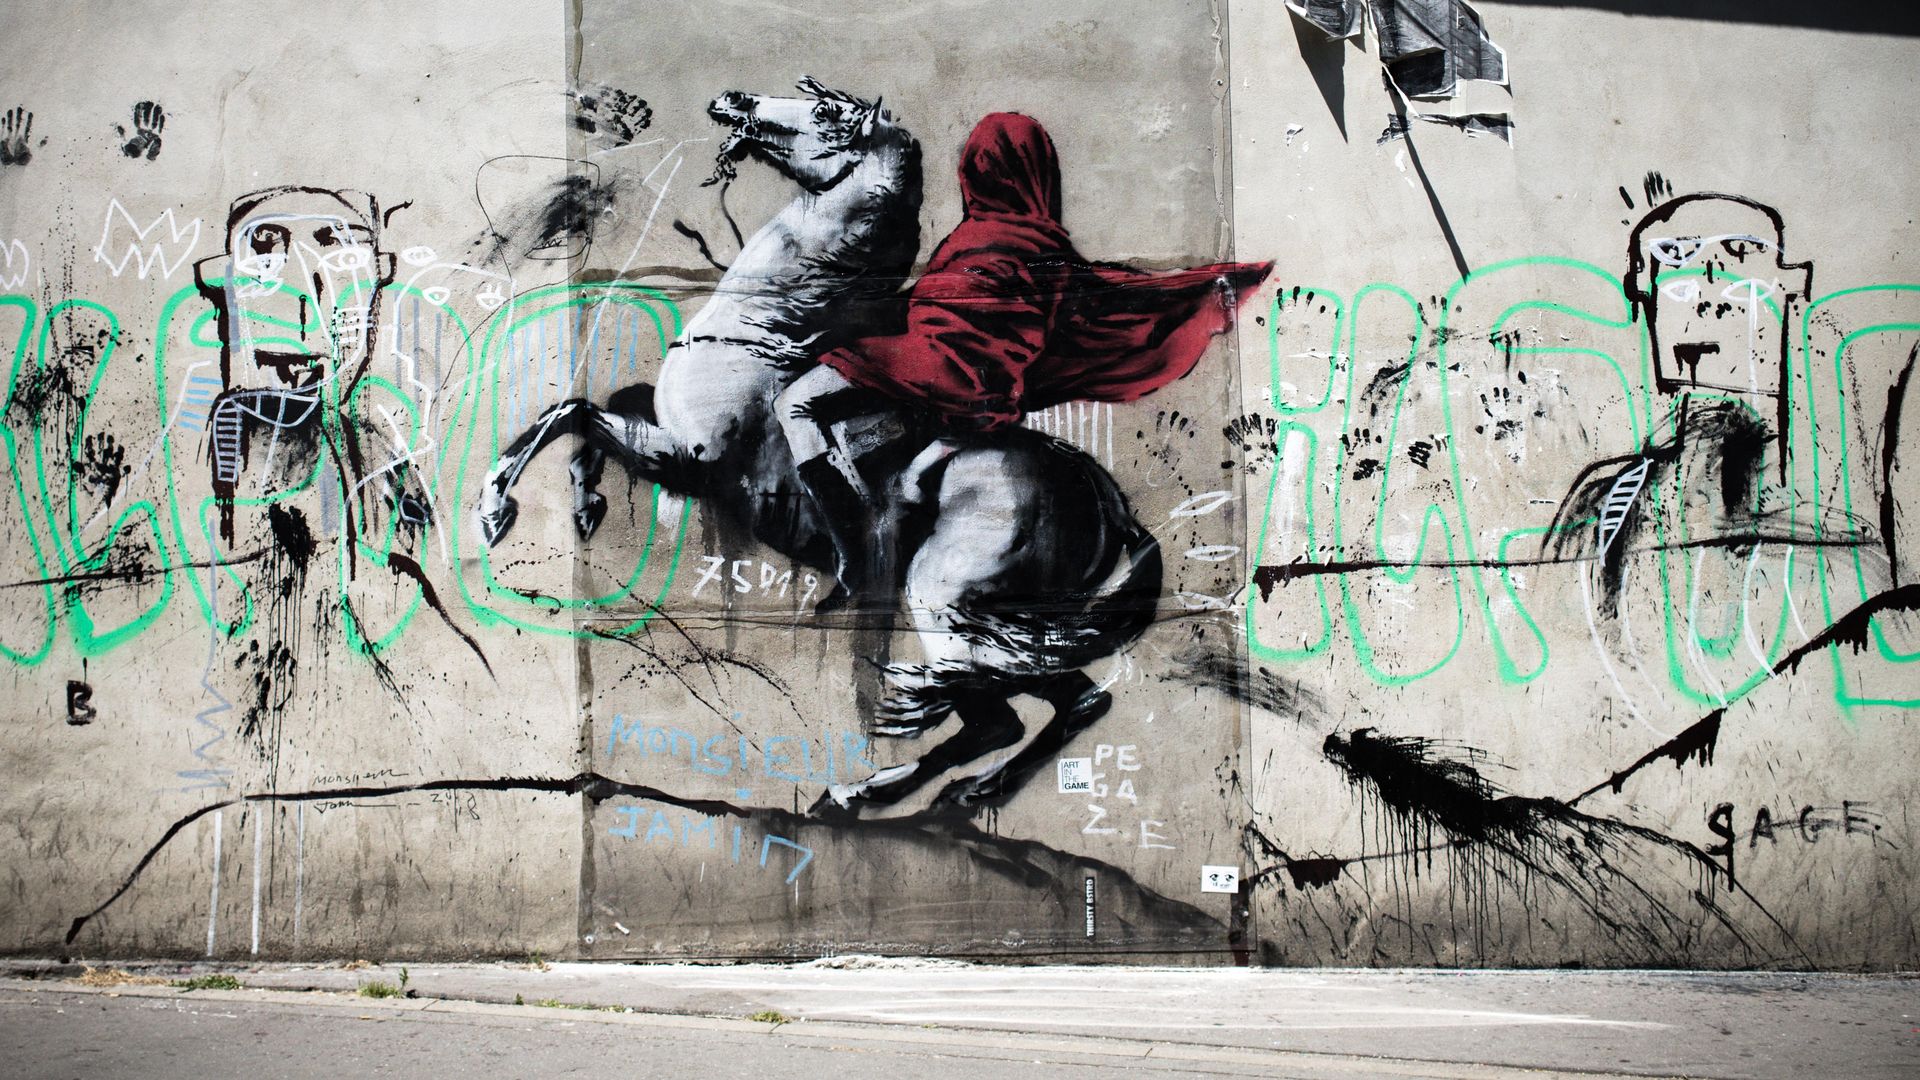 A mural in Paris by street artist Banksy.